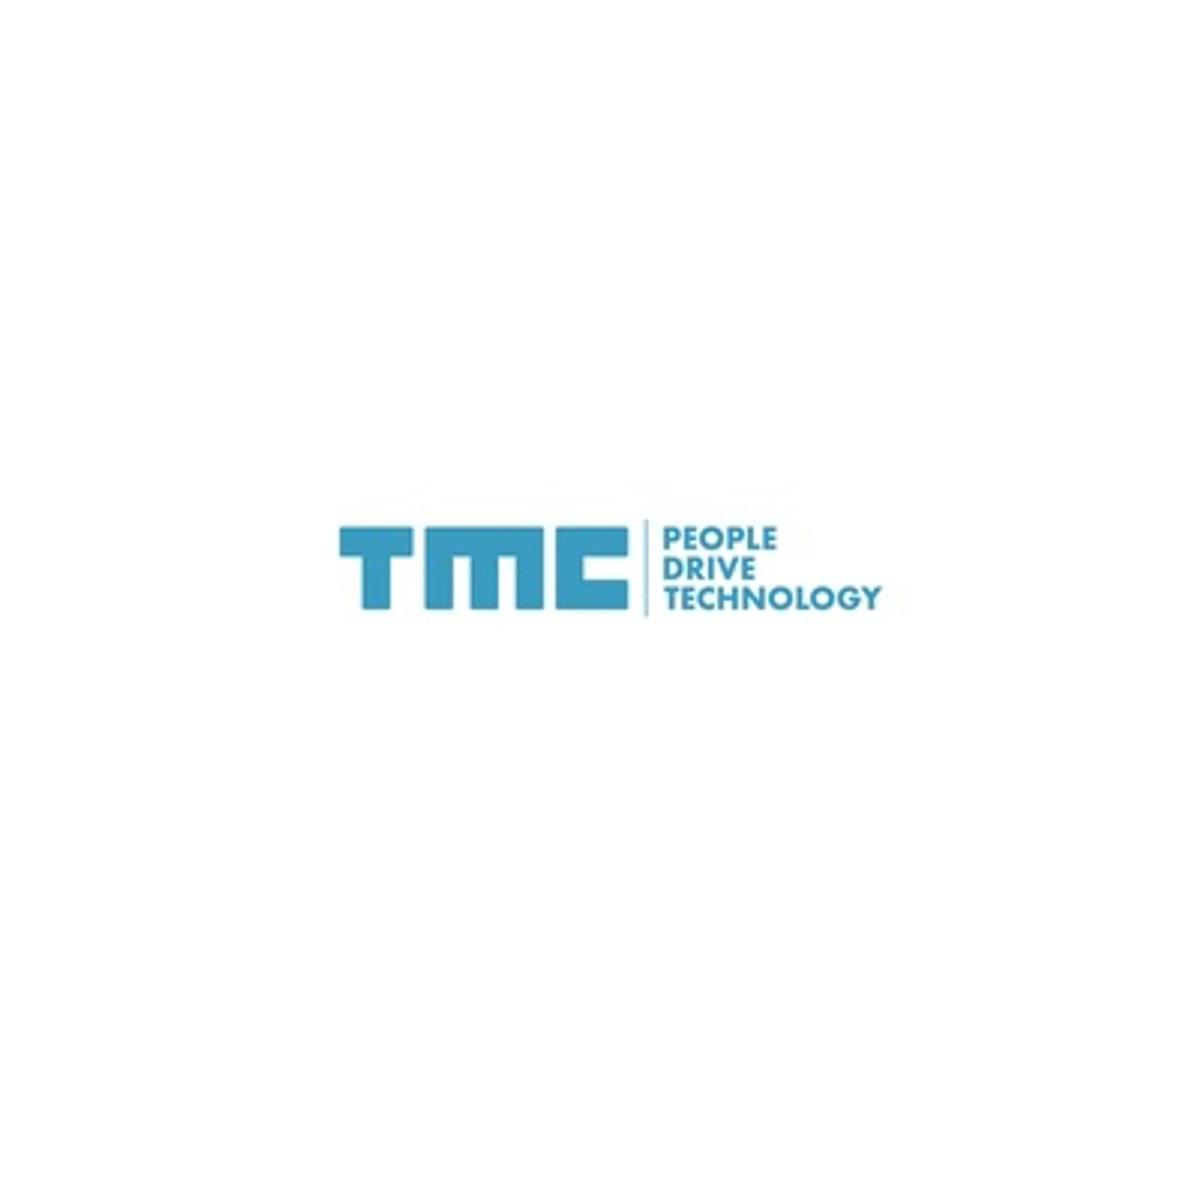 Boek uitgebracht over TMC - The Member Company image